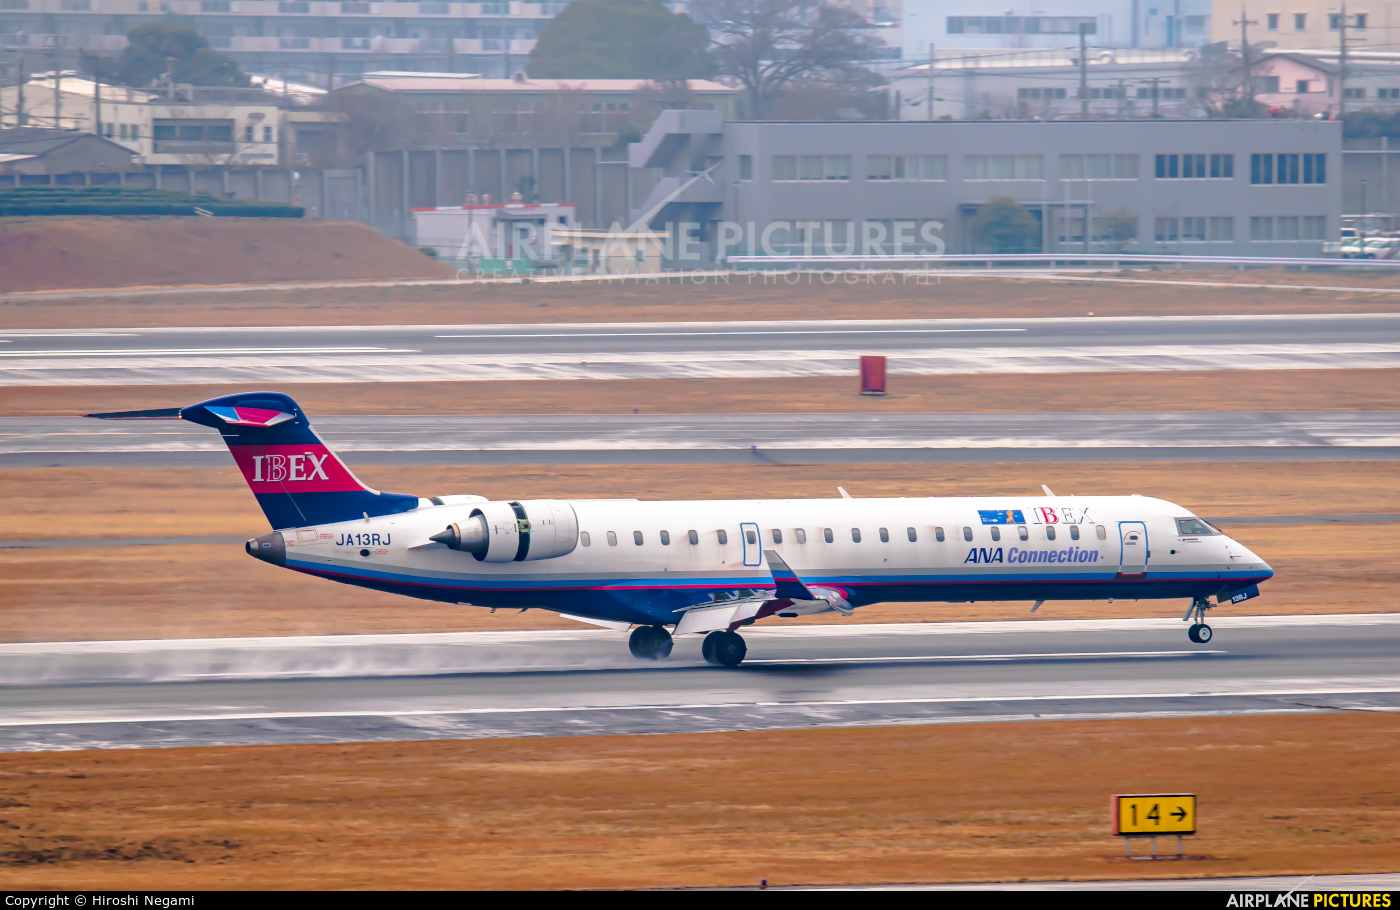 Ibex Airlines - ANA Connection JA13RJ aircraft at Osaka - Itami Intl